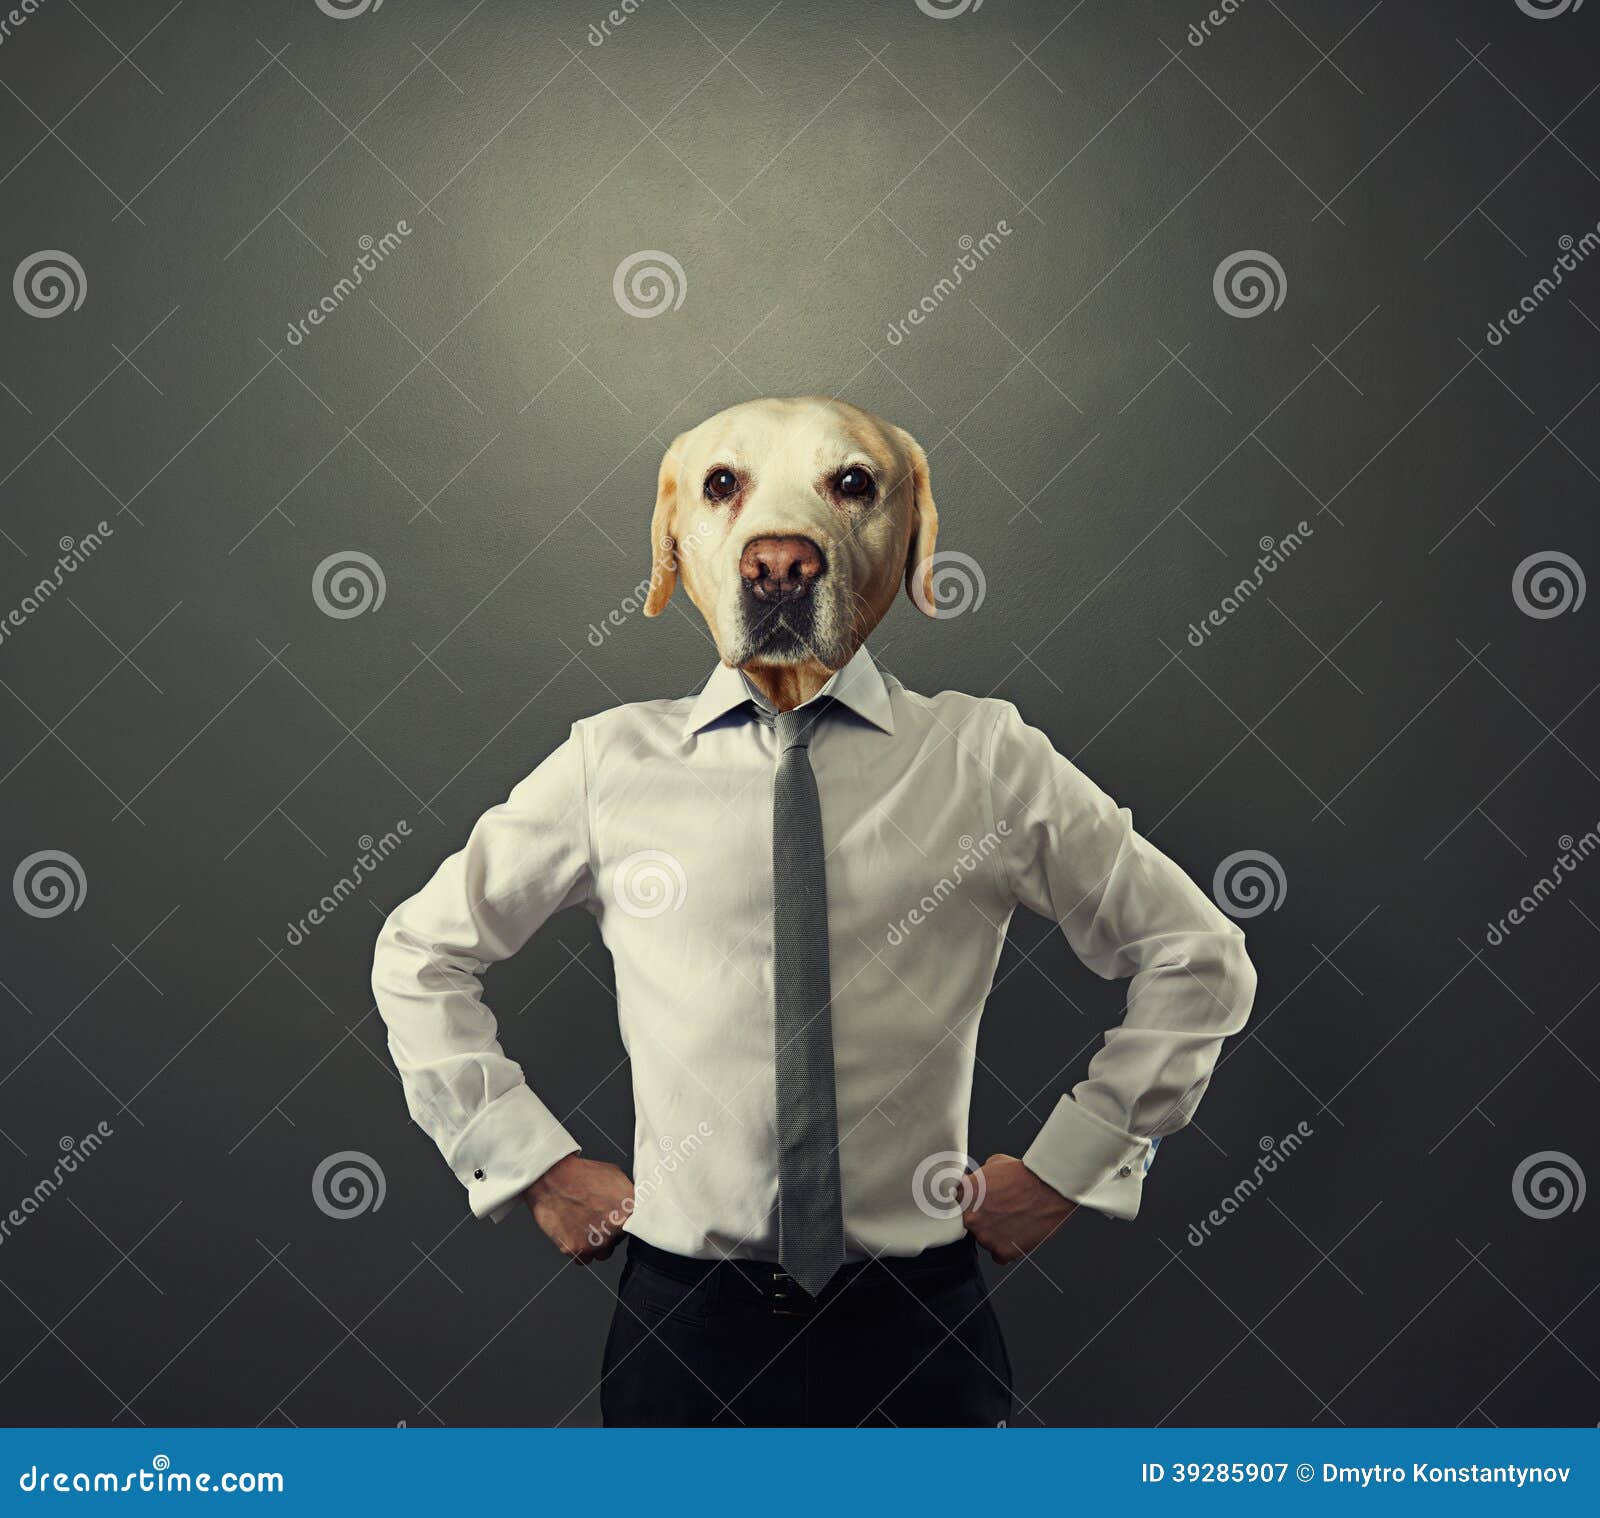 Стендап орлов человек с головой собаки